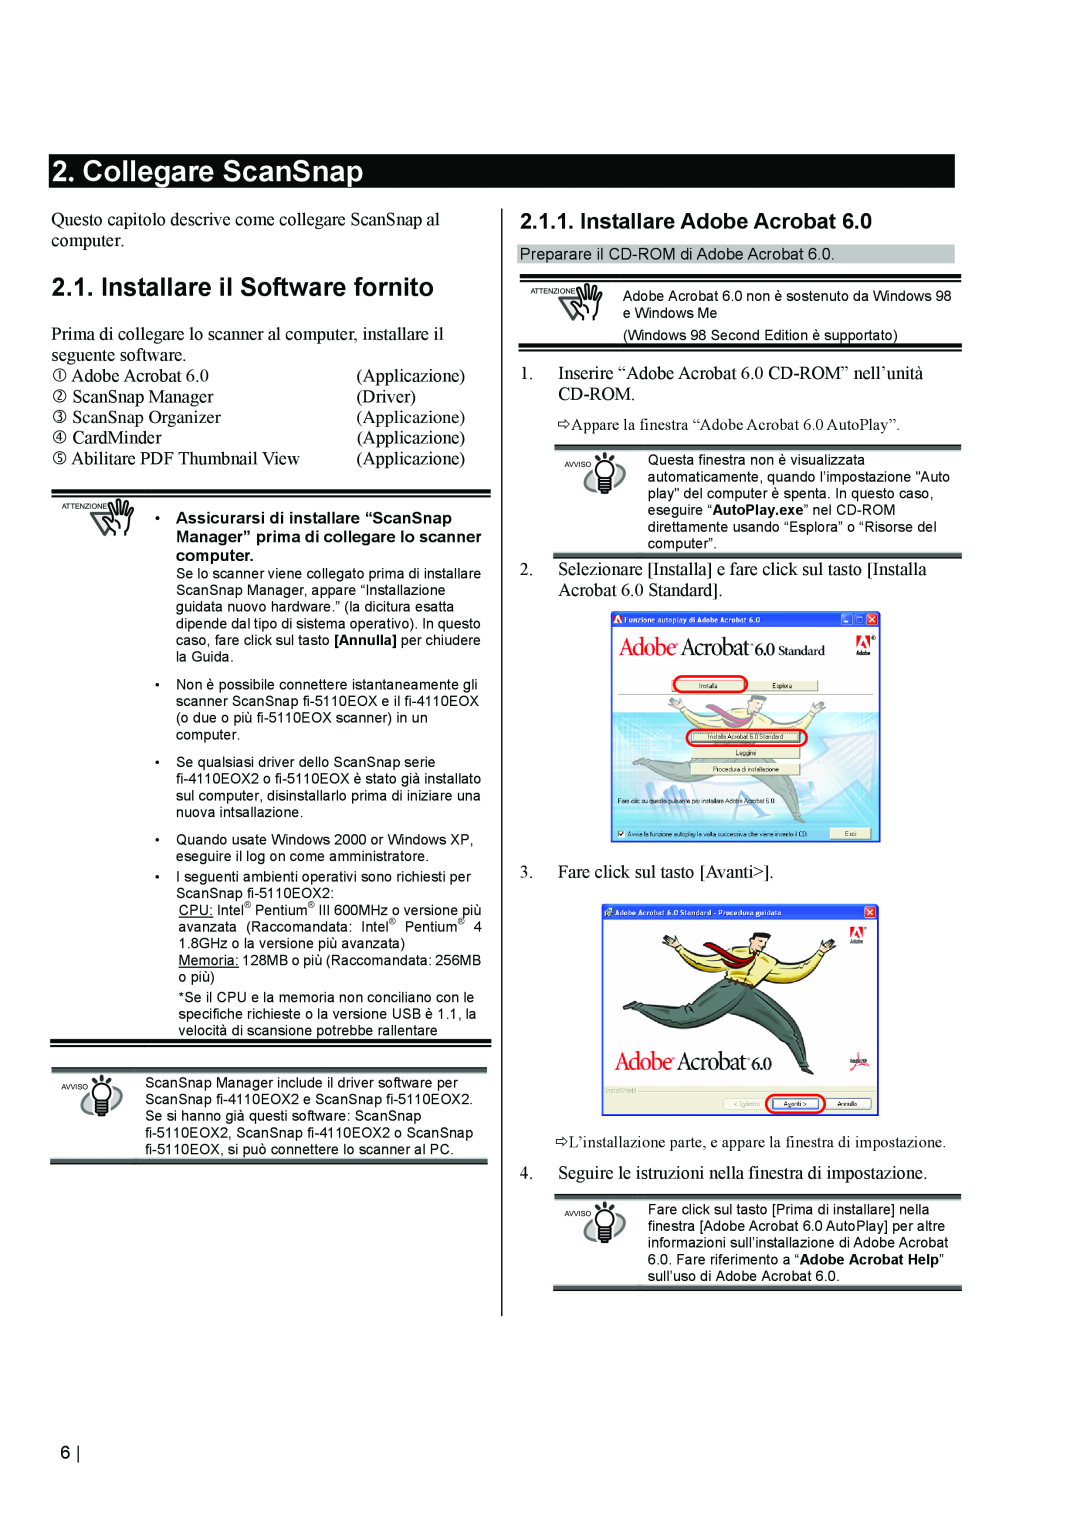 Fujitsu fi-5110EOX2 manual Collegare ScanSnap, Installare il Software fornito, Installare Adobe Acrobat 